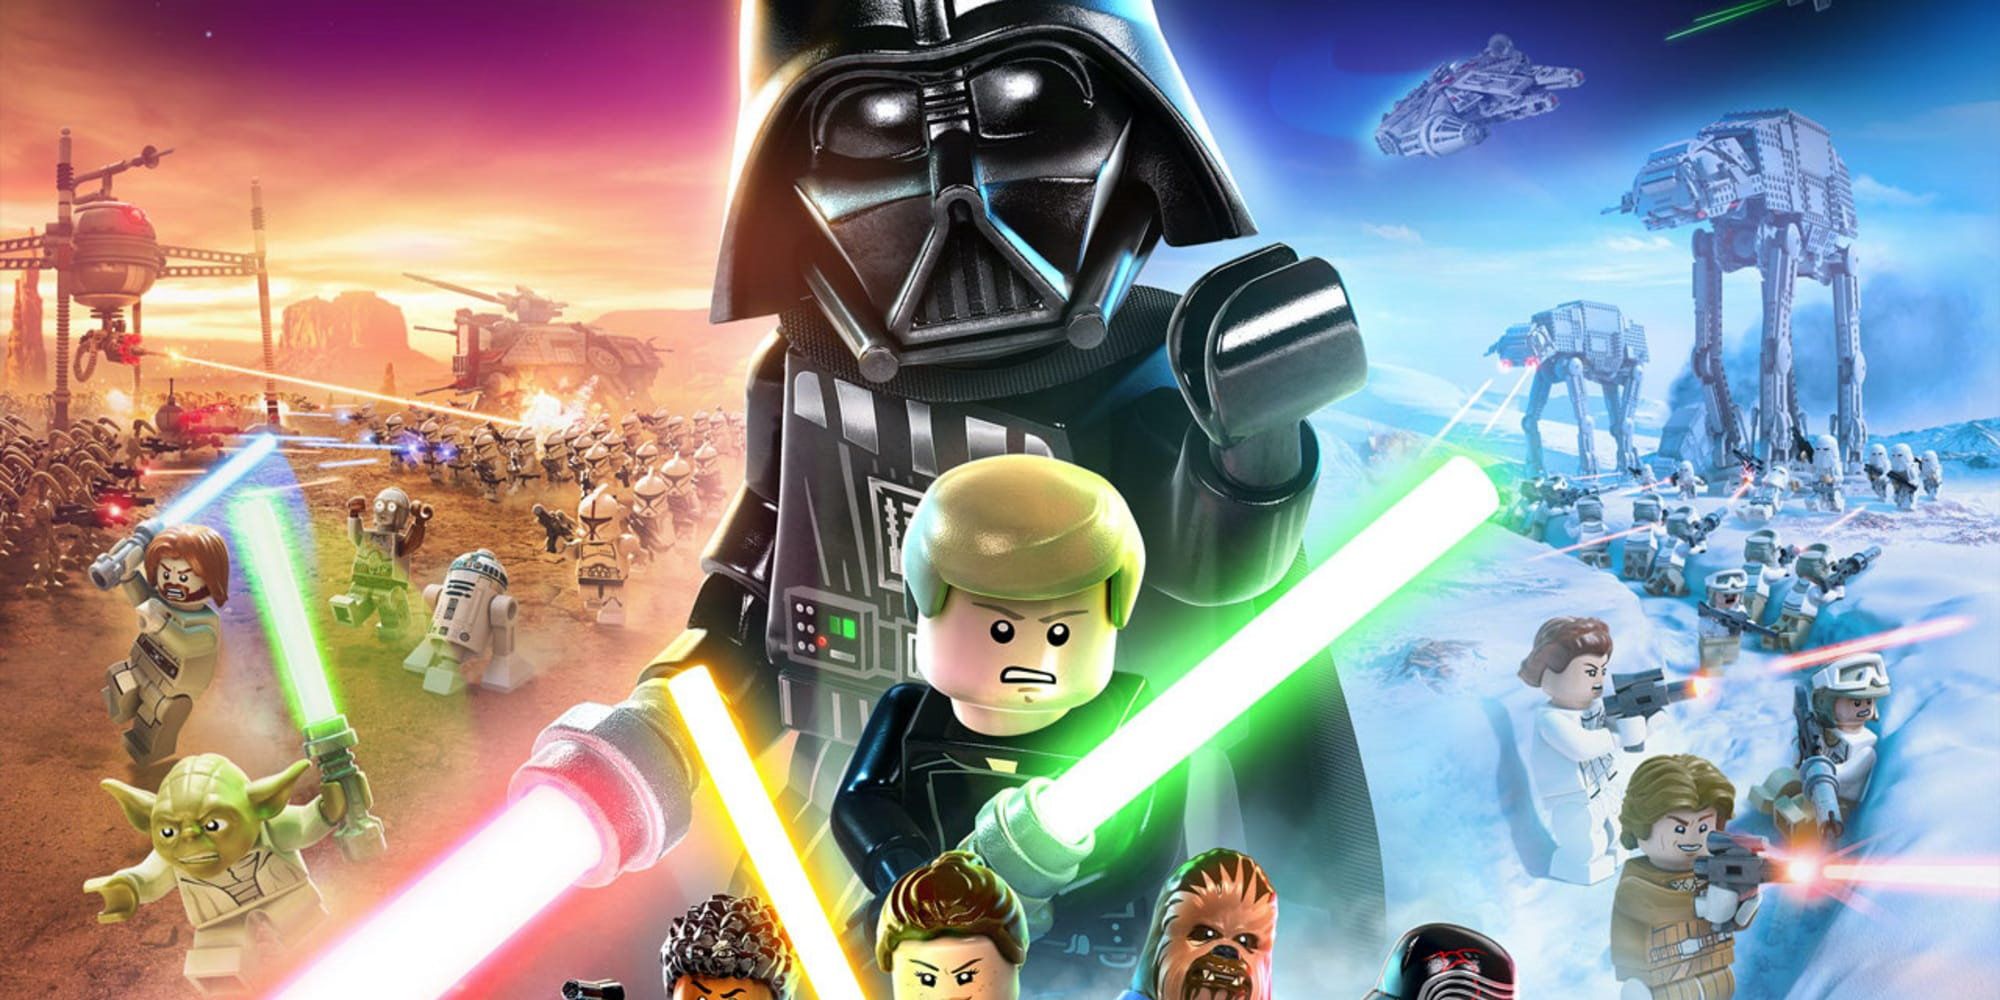 Lego Star Wars - via TT Games